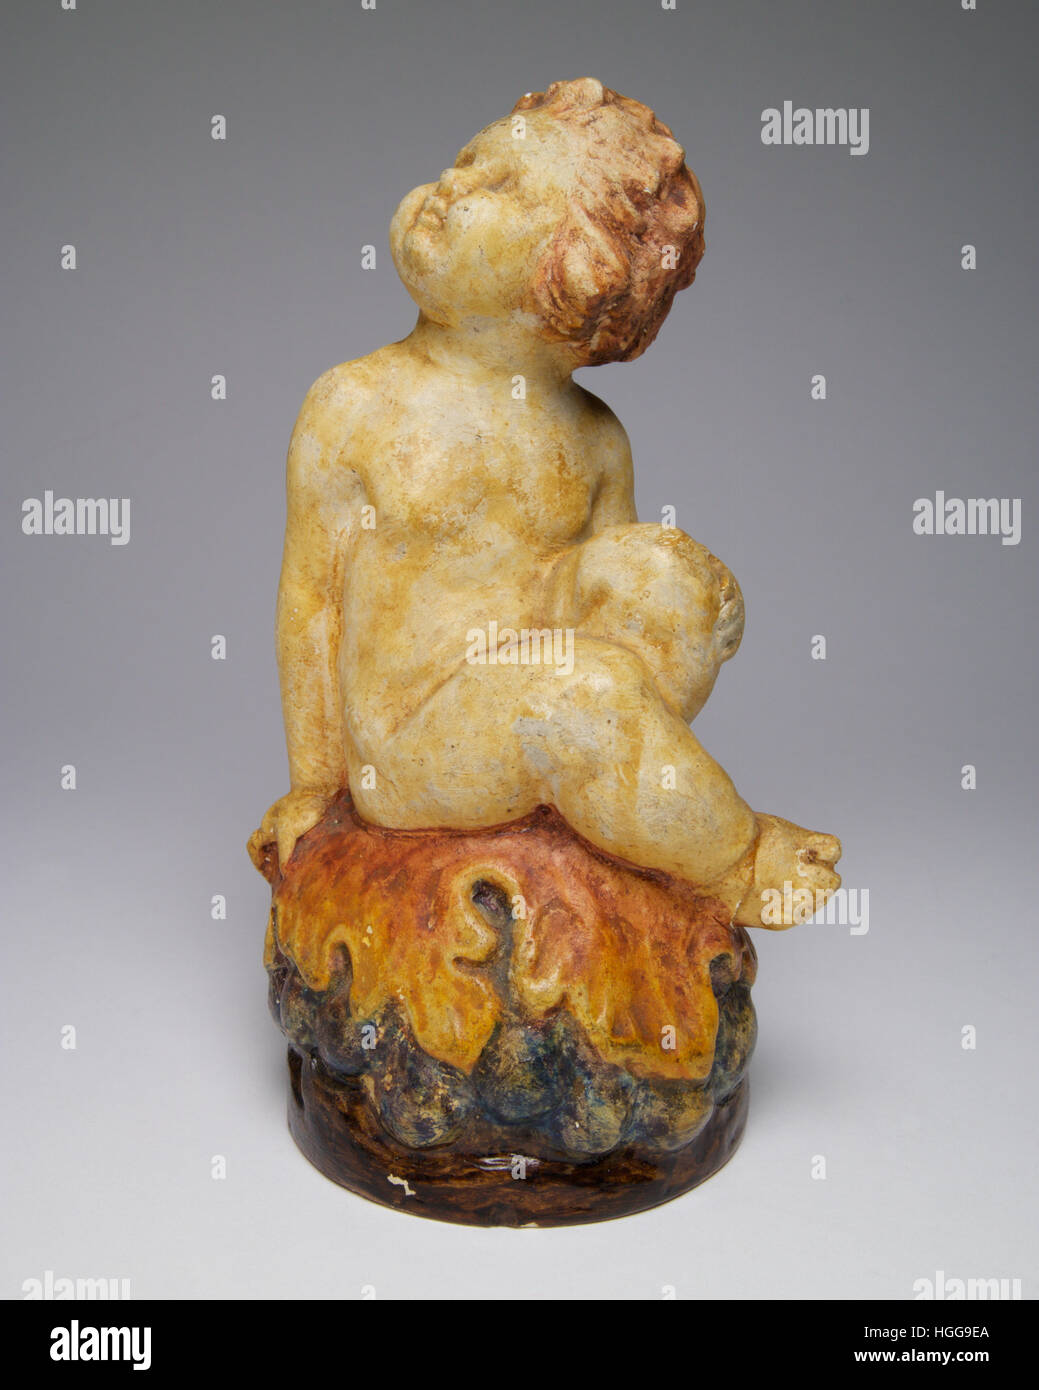 La figure de la Poterie Compton Bacchus assis sur la base d'un dôme de raisins et de feuilles de vigne. Le chiffre mesure 16cm de haut. Banque D'Images